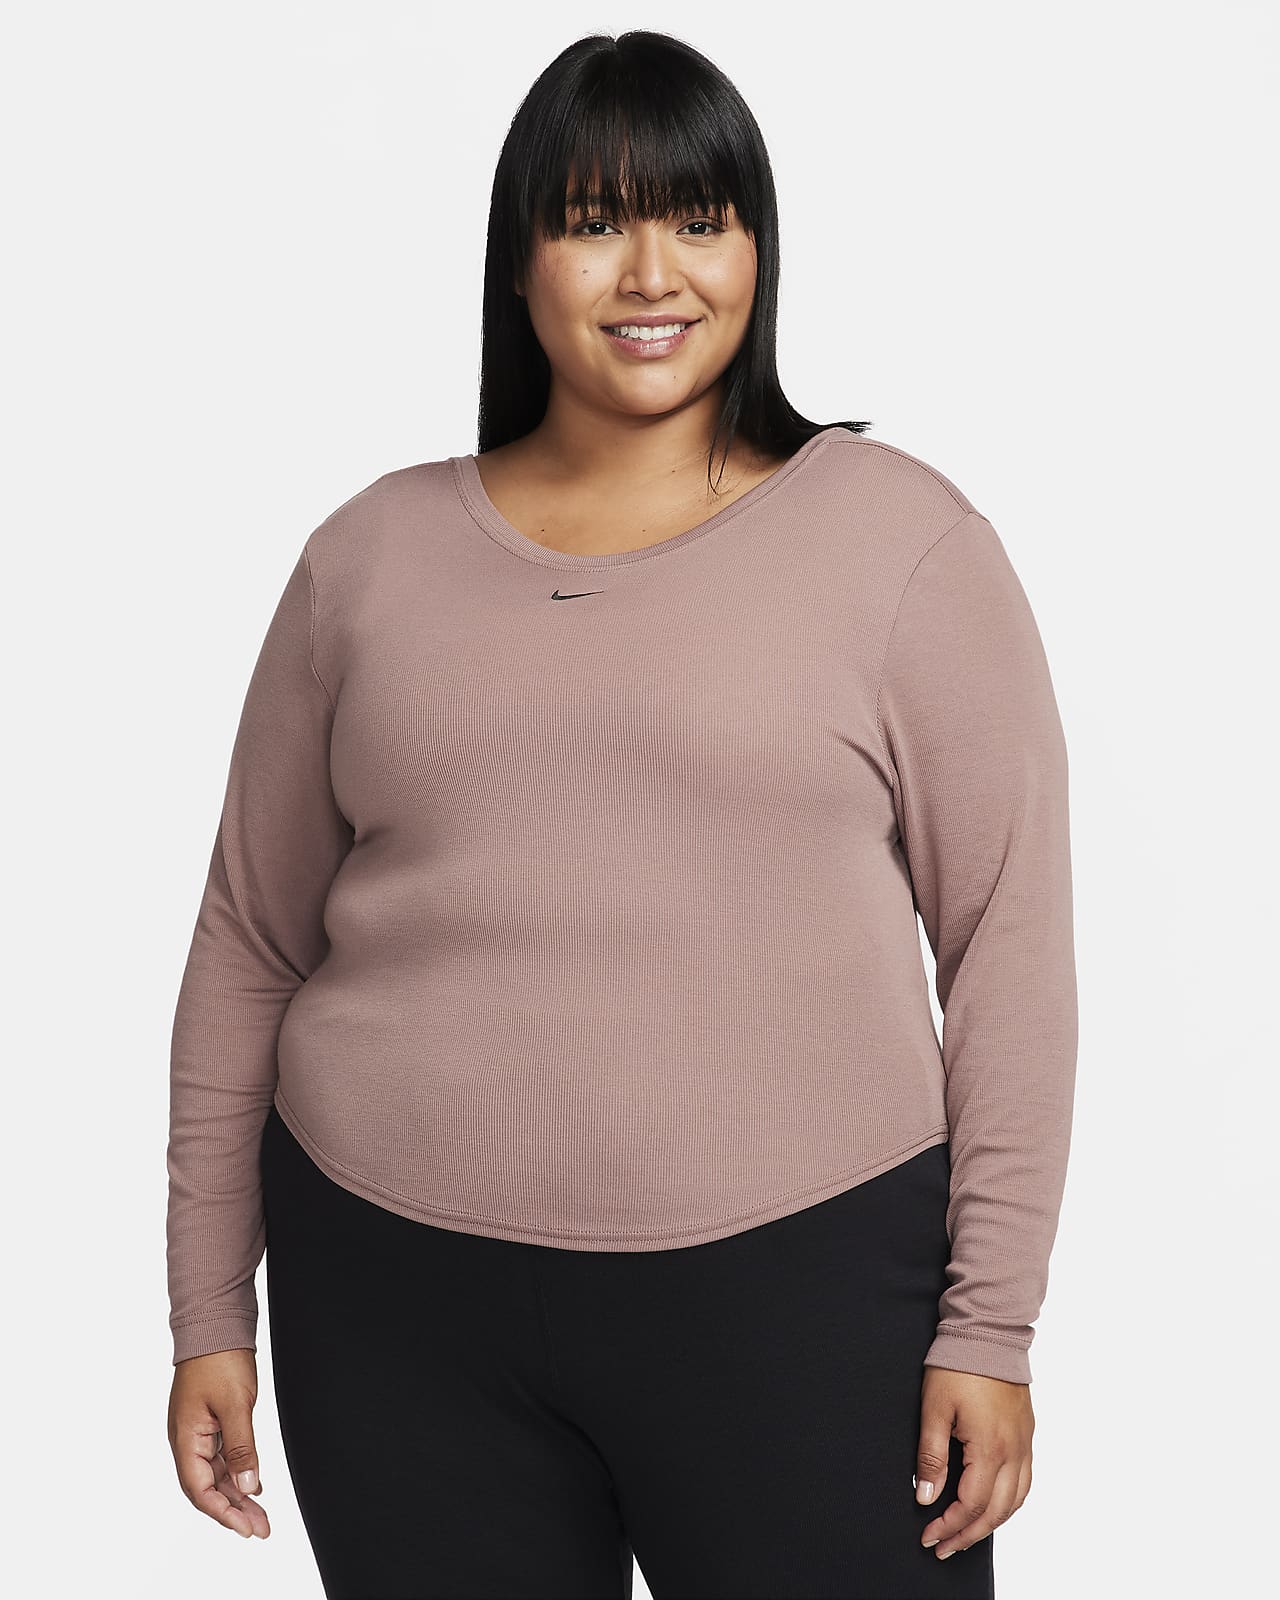 Women's Plus Size Running Tops & T-Shirts. Nike LU